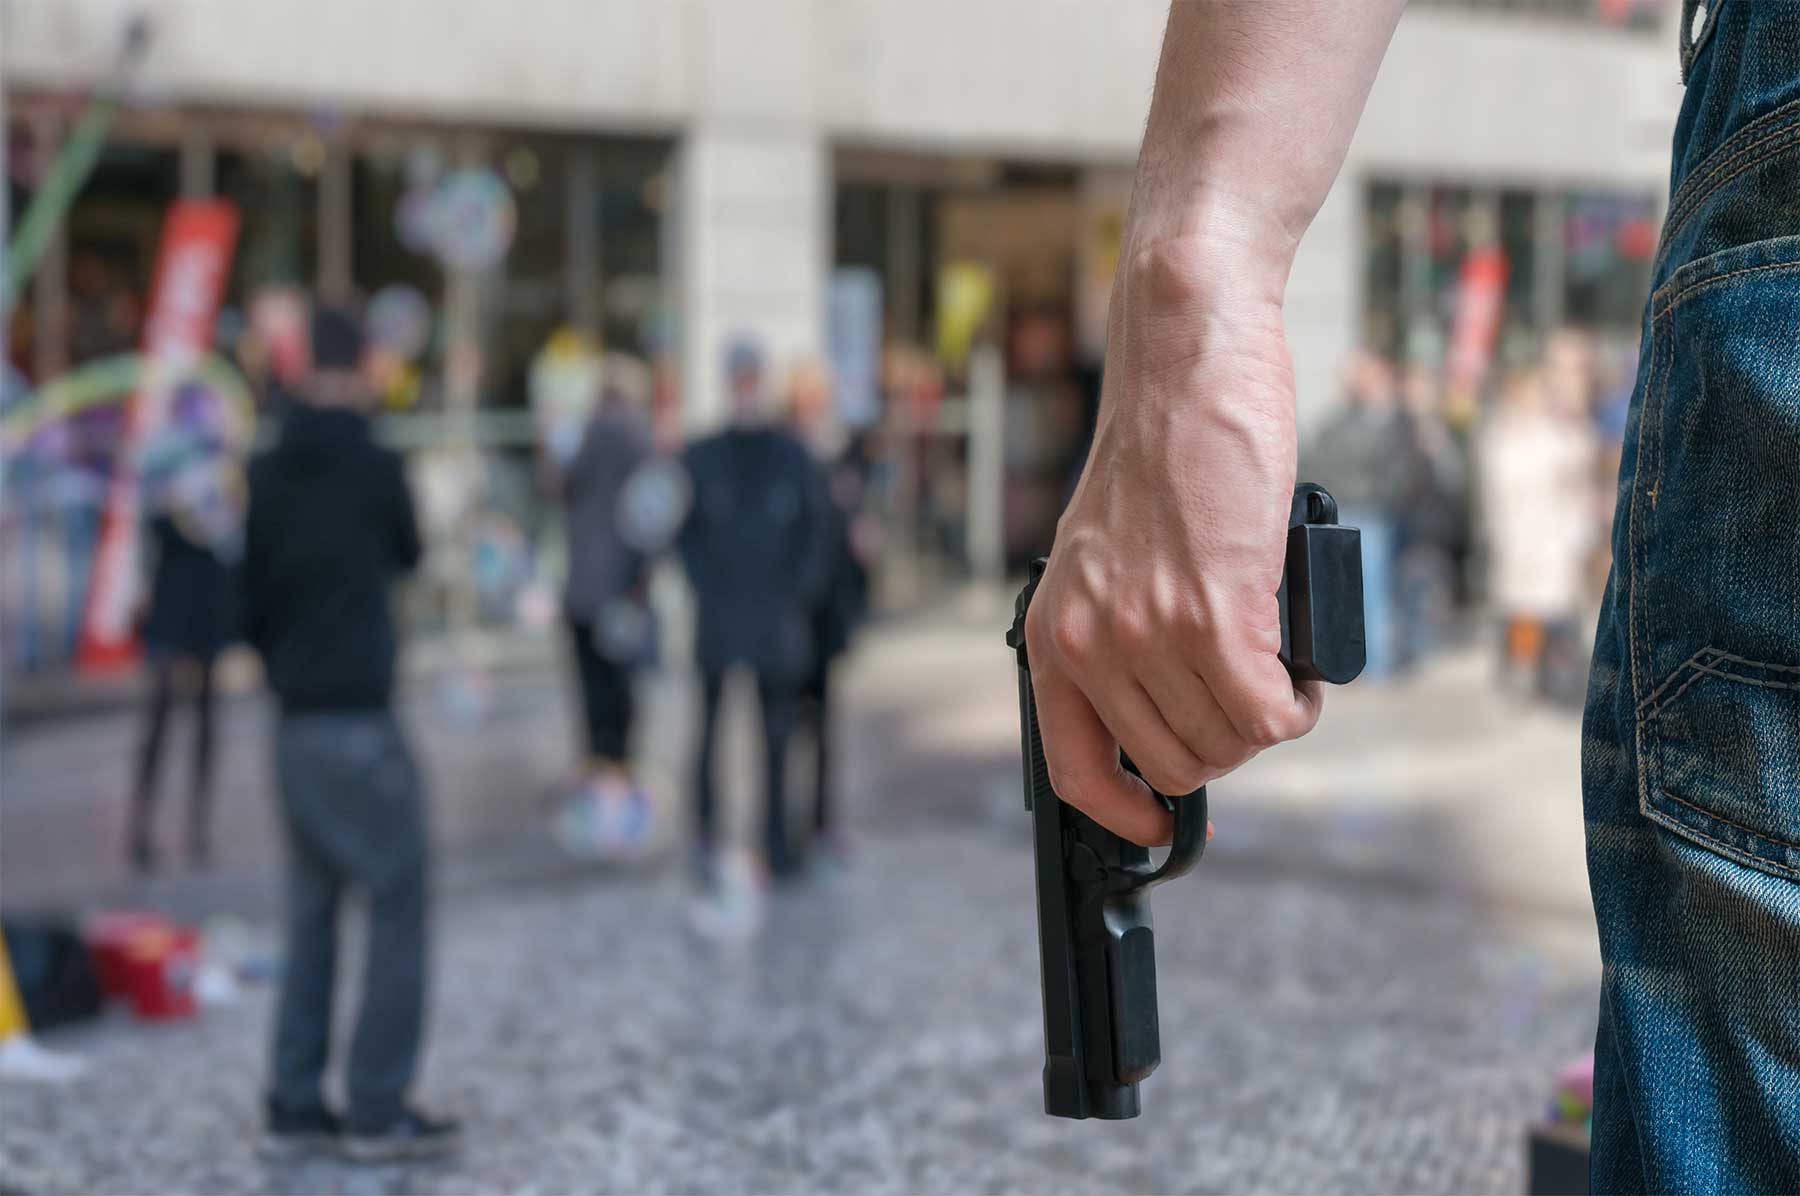 Man holding a gun